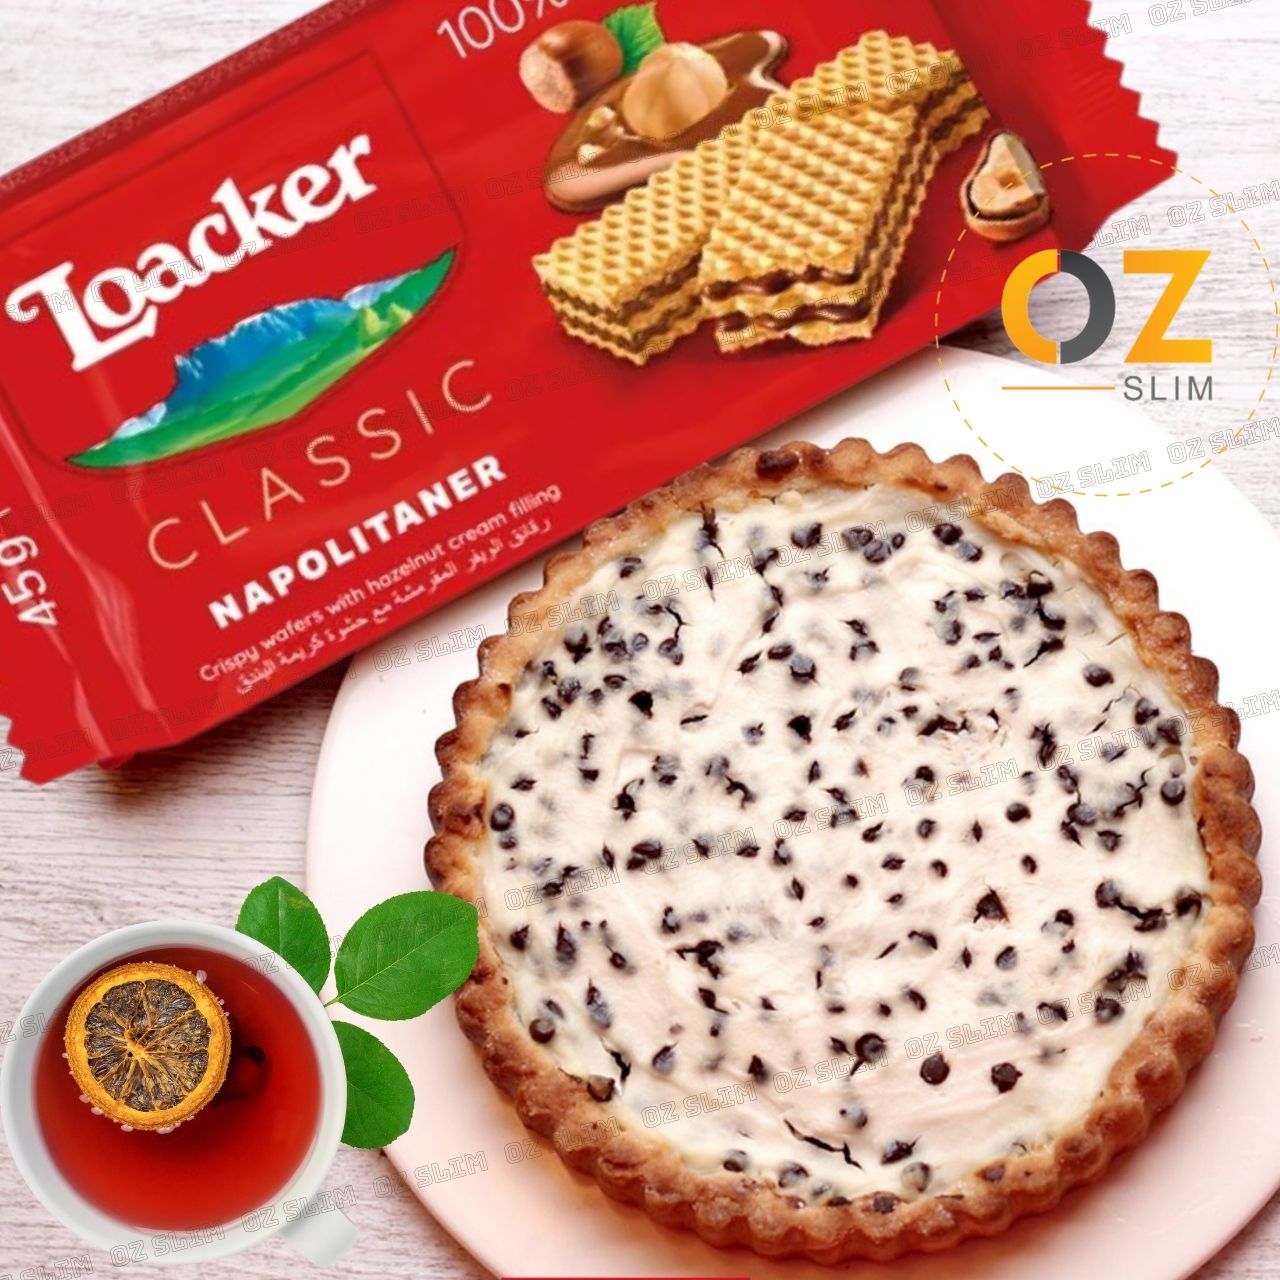 Bánh xốp Loacker nhập khẩu Ý vị bánh xốp mịn, giòn tan, thơm và cung cấp nguồn năng lượng cho cơ thể - Nhiều vị, nhiều size - OZ Slim Store